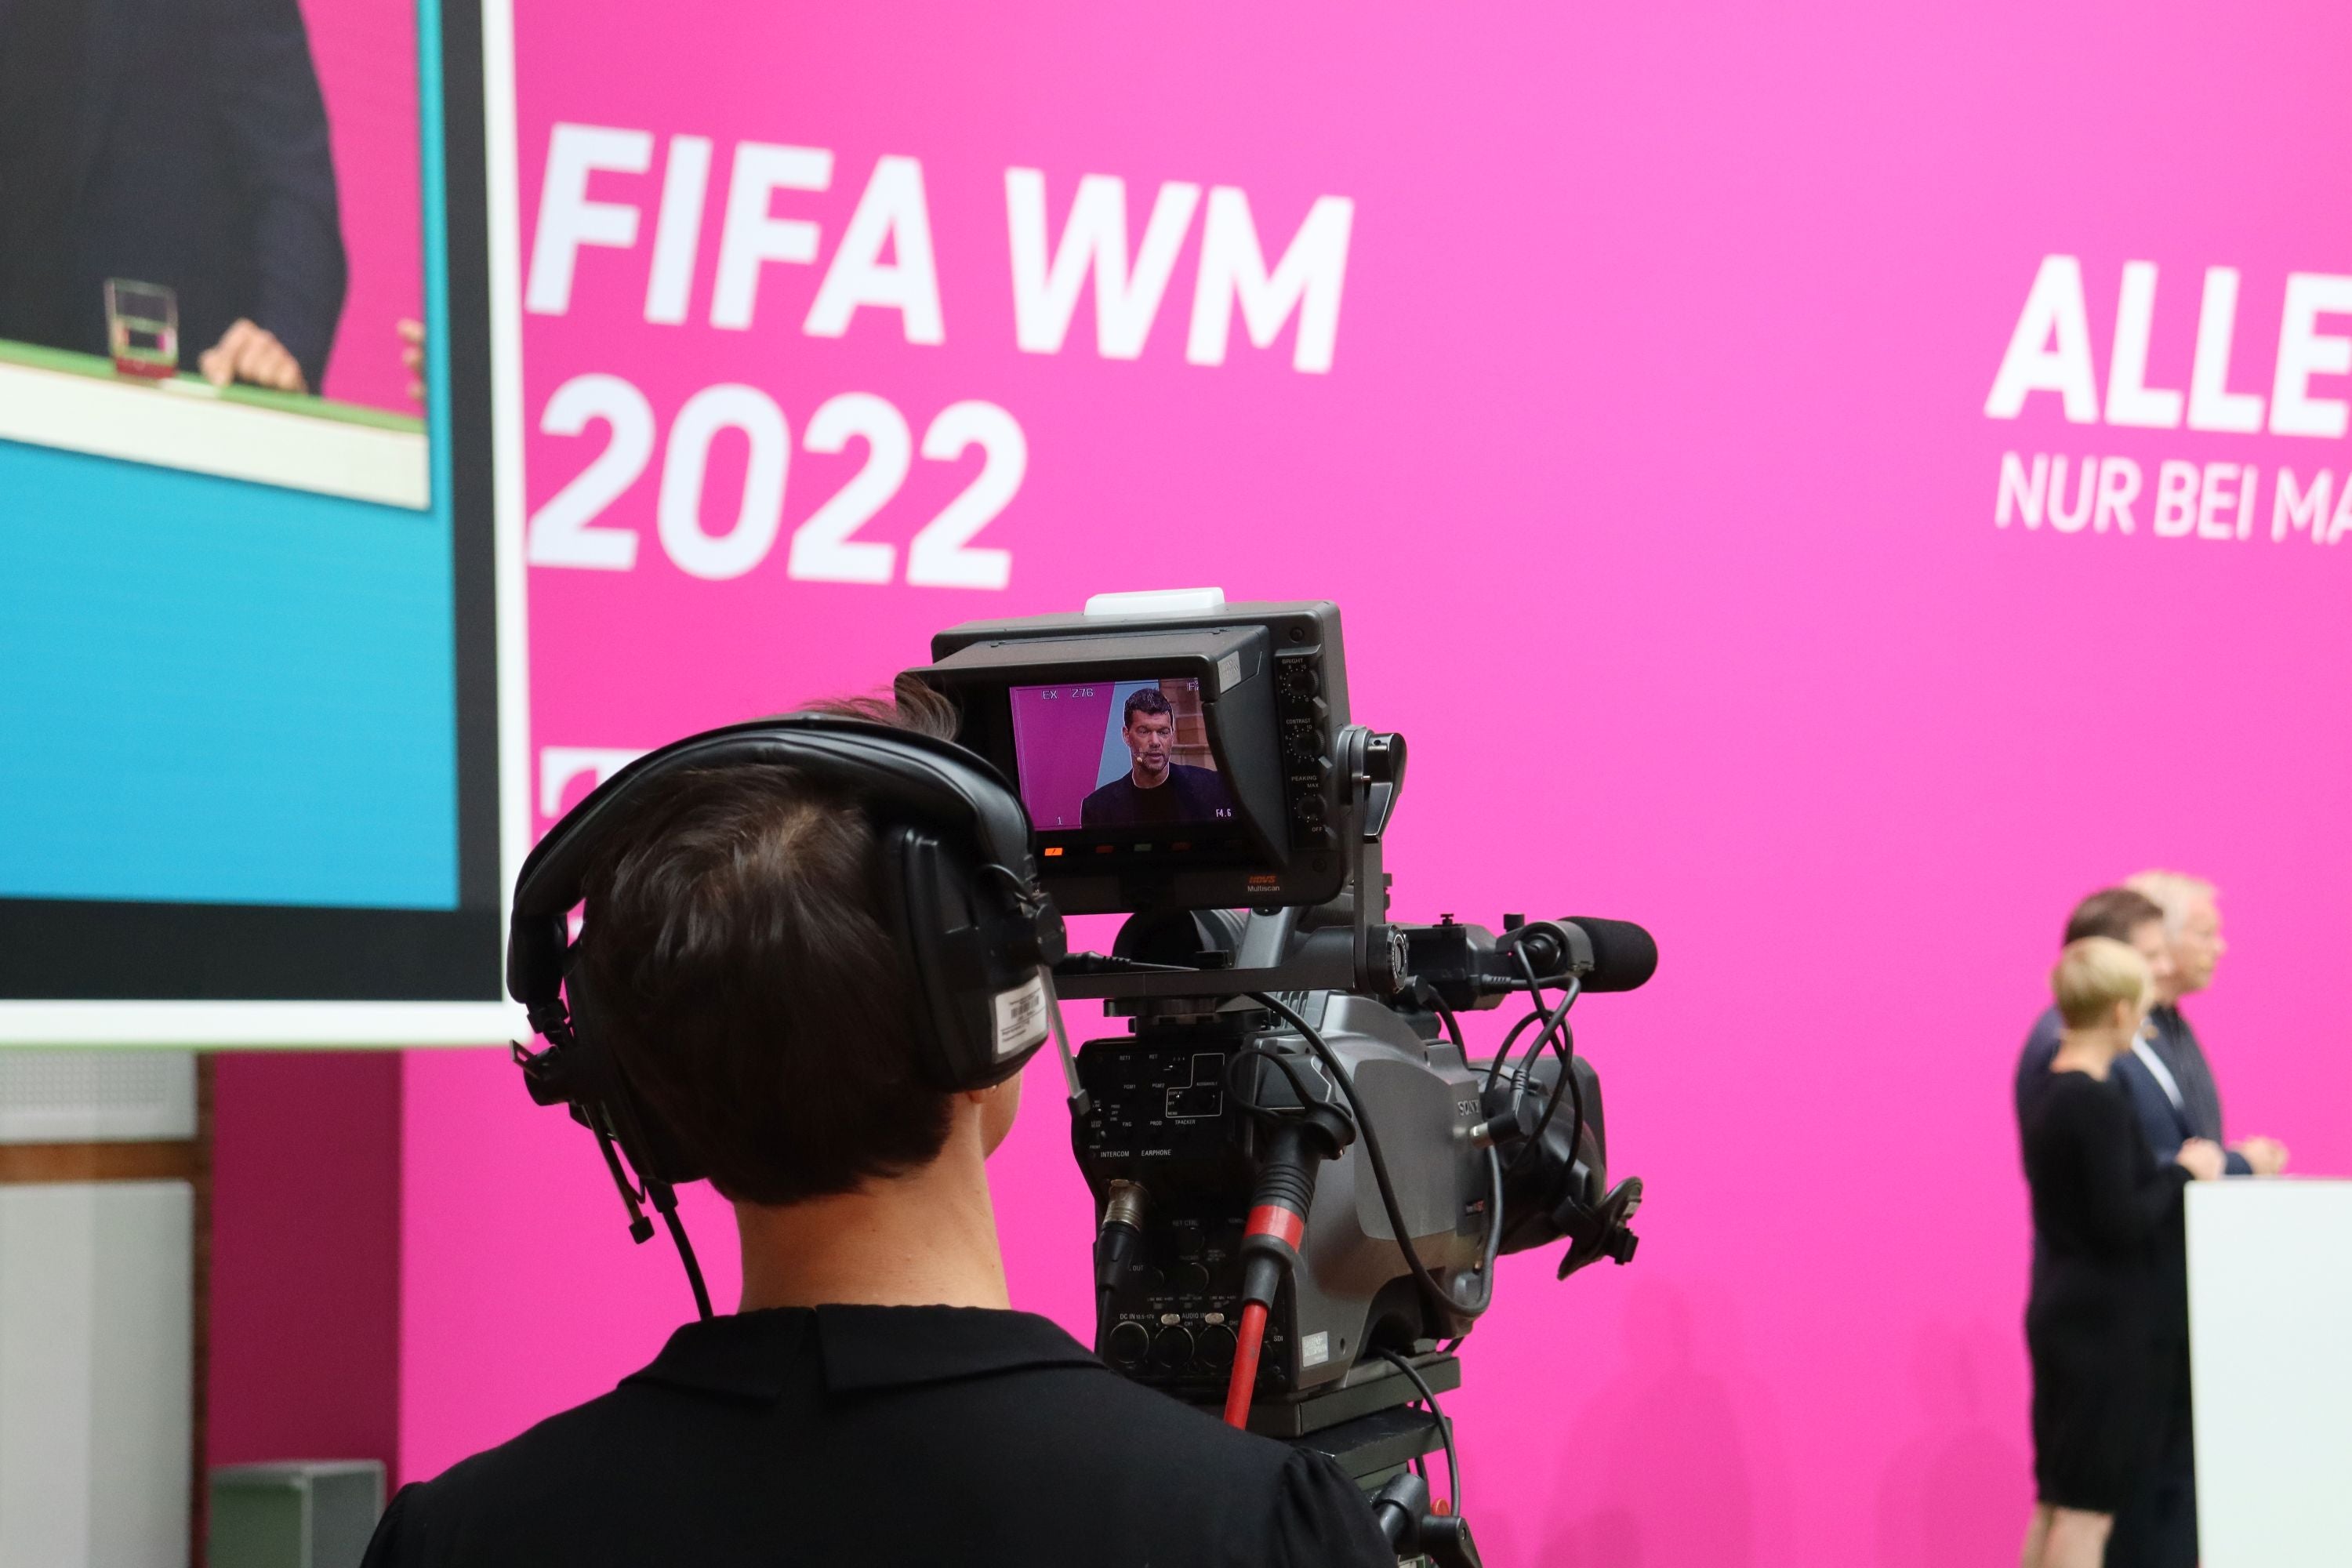 FIFA WM 2022: So siehst du die Fußball-WM live – auch in UHD